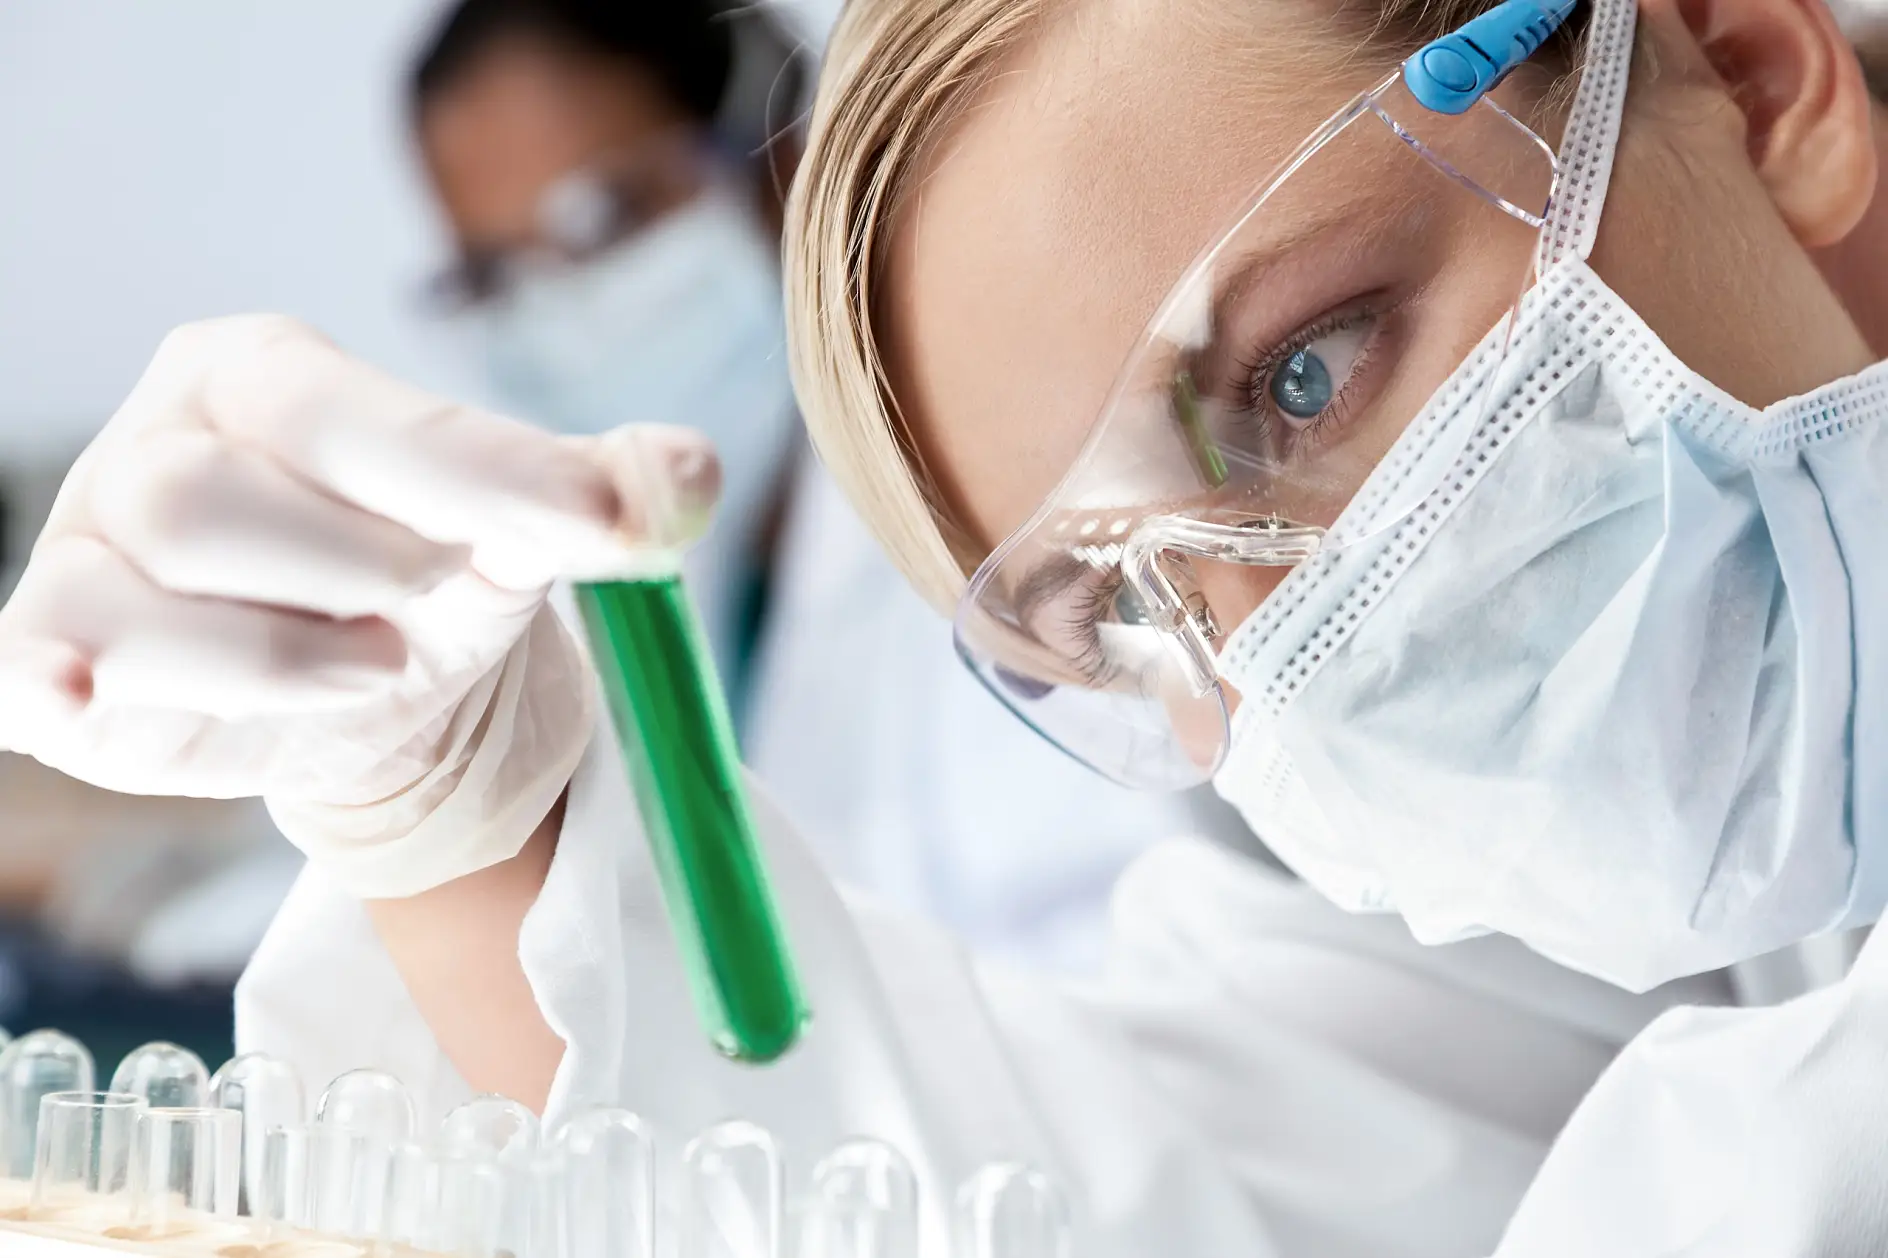 Une femme médecin ou chercheuse scientifique regardant une solution verte dans un laboratoire, avec sa collègue asiatique dans le flou derrière elle.